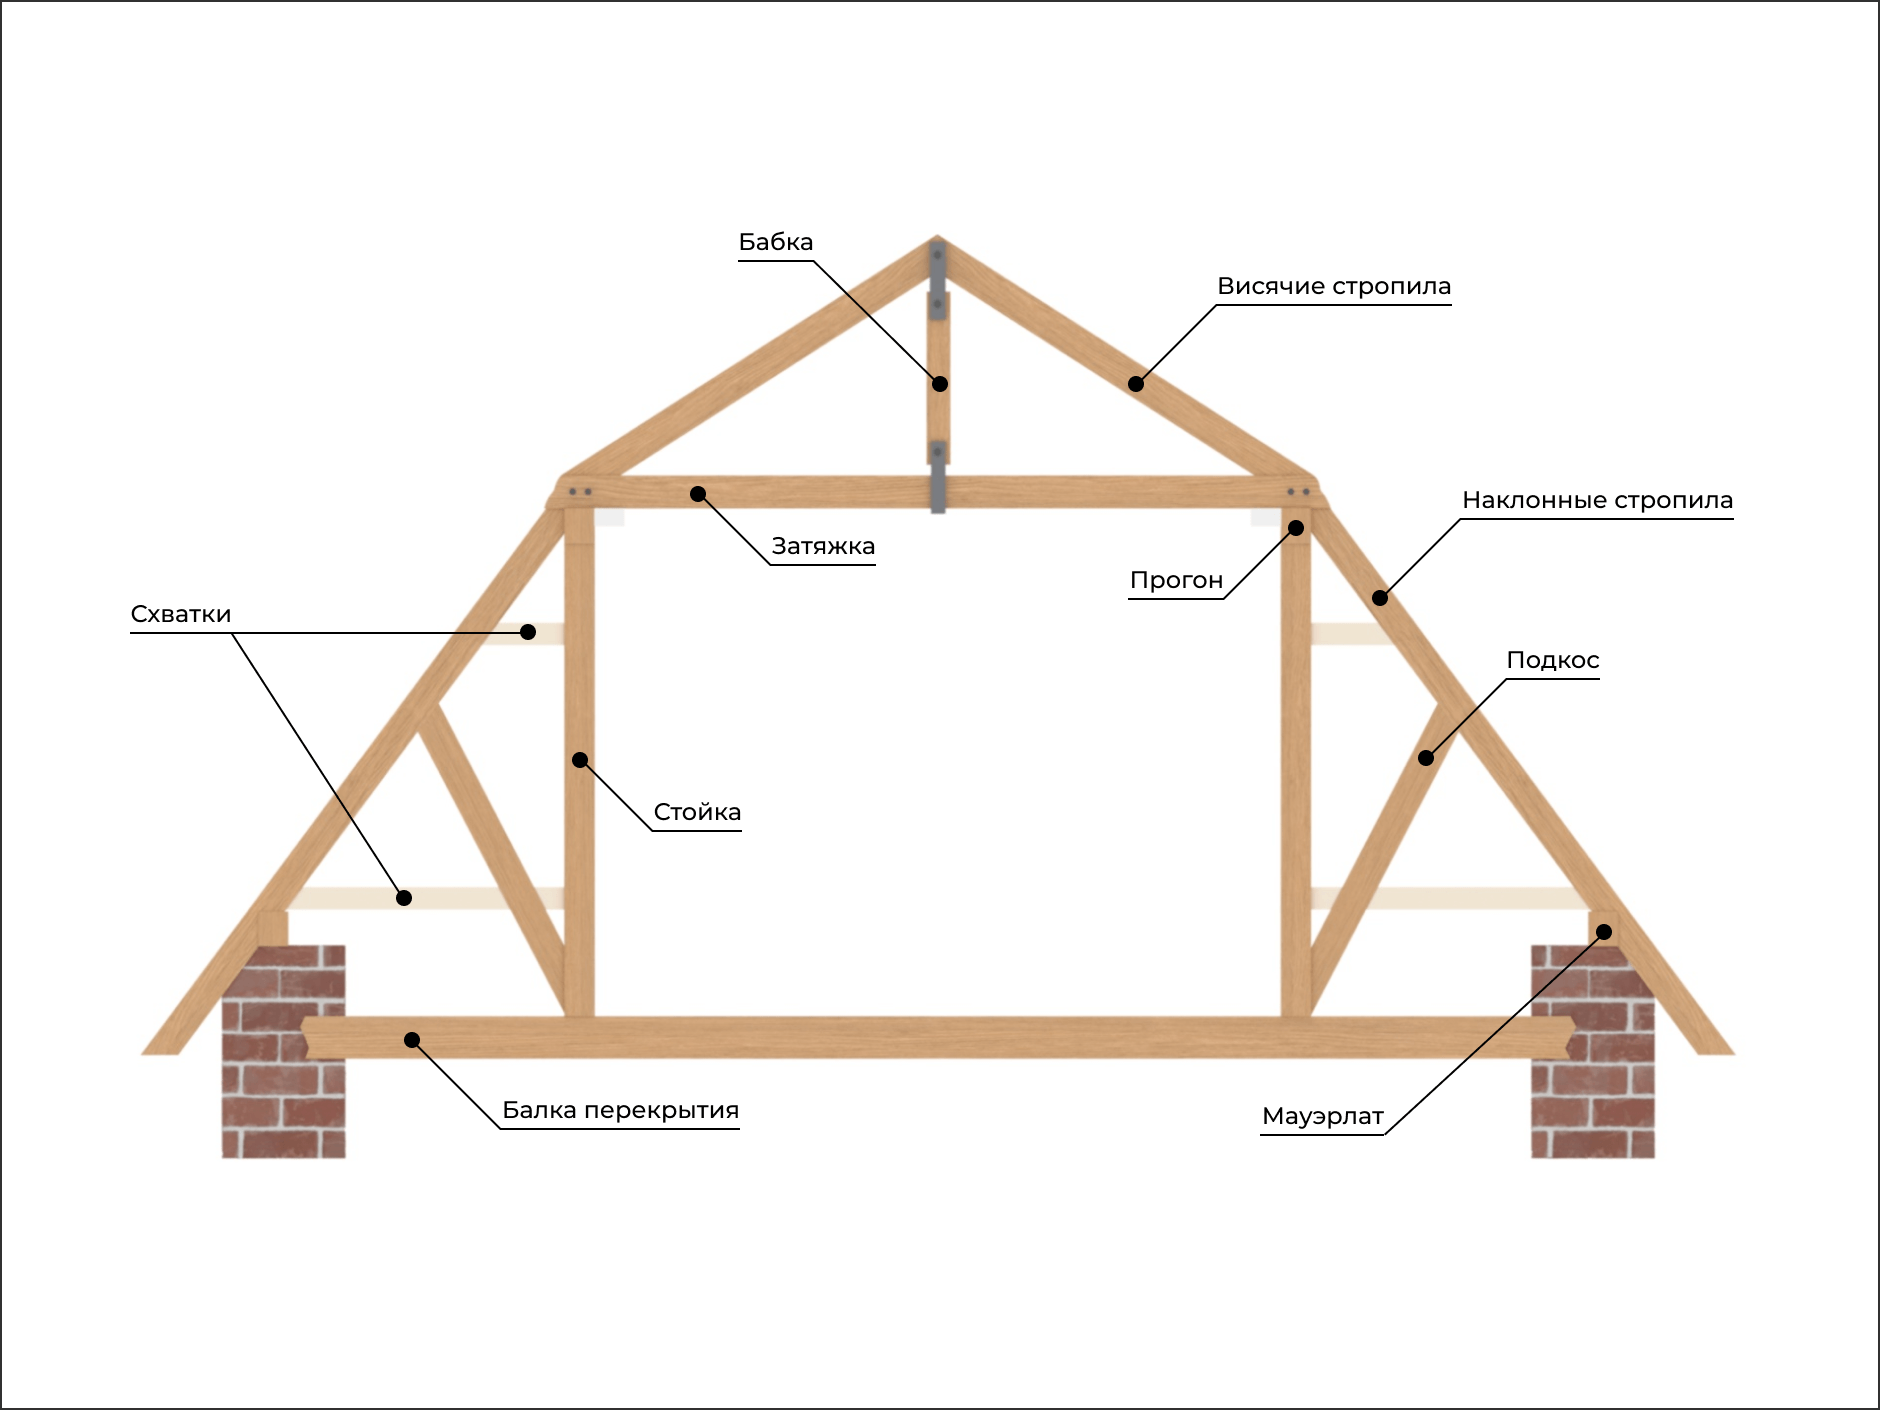 Мансардная крыша частного дома: строение конструкции, стропильной системы, инструкция, видео и фото